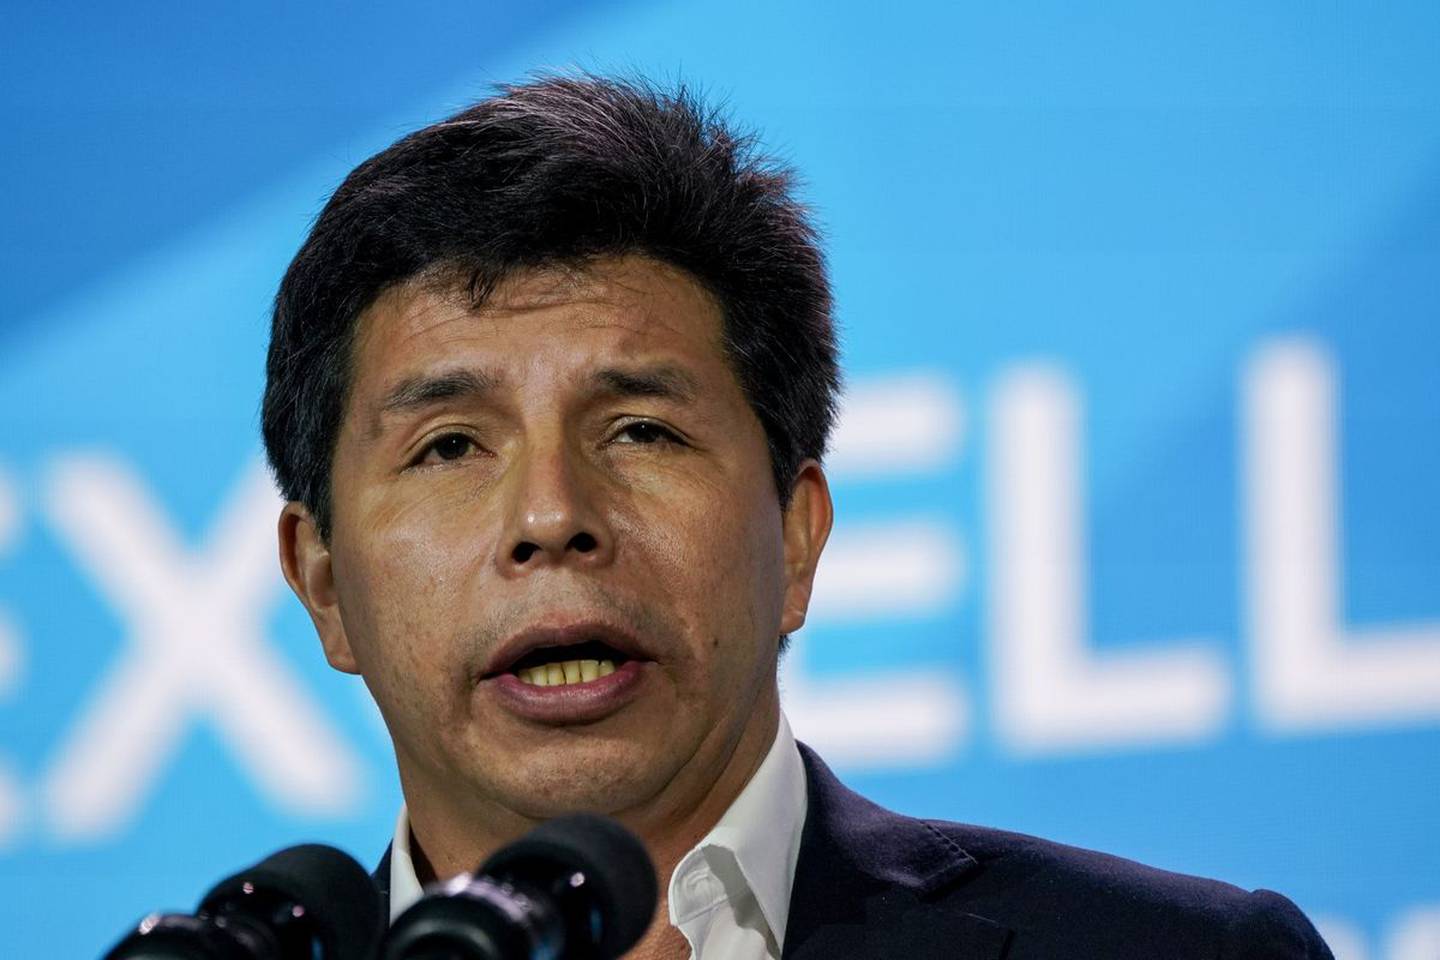 Cancillerías y Gobiernos del continente han reaccionado al intento de golpe de Estado del ahora destituido mandatario peruano Pedro Castillo.